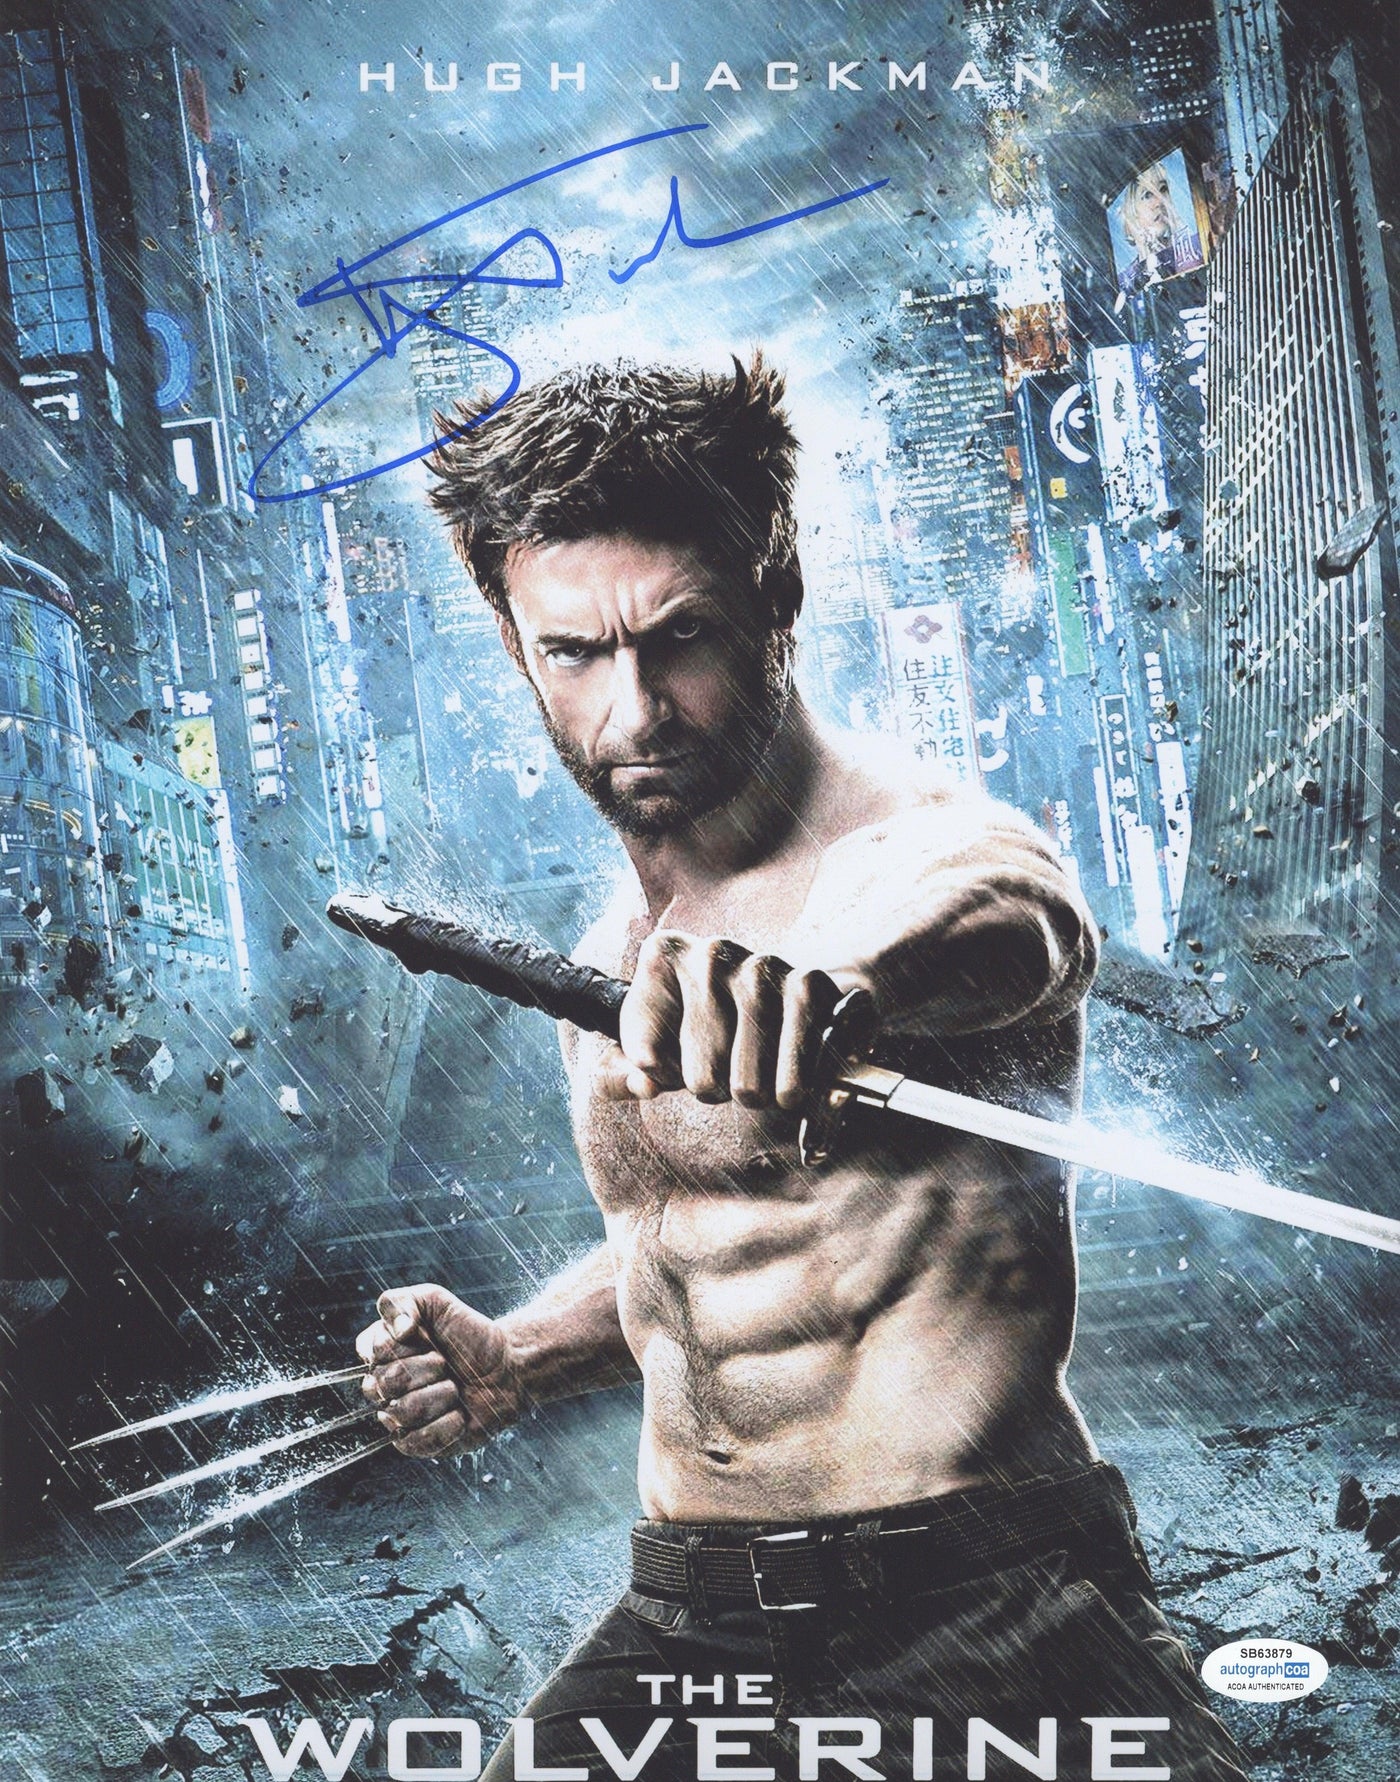 Hugh Jackman Autographed 8x10 Photo The Wolverine X-MEN AutographCOA